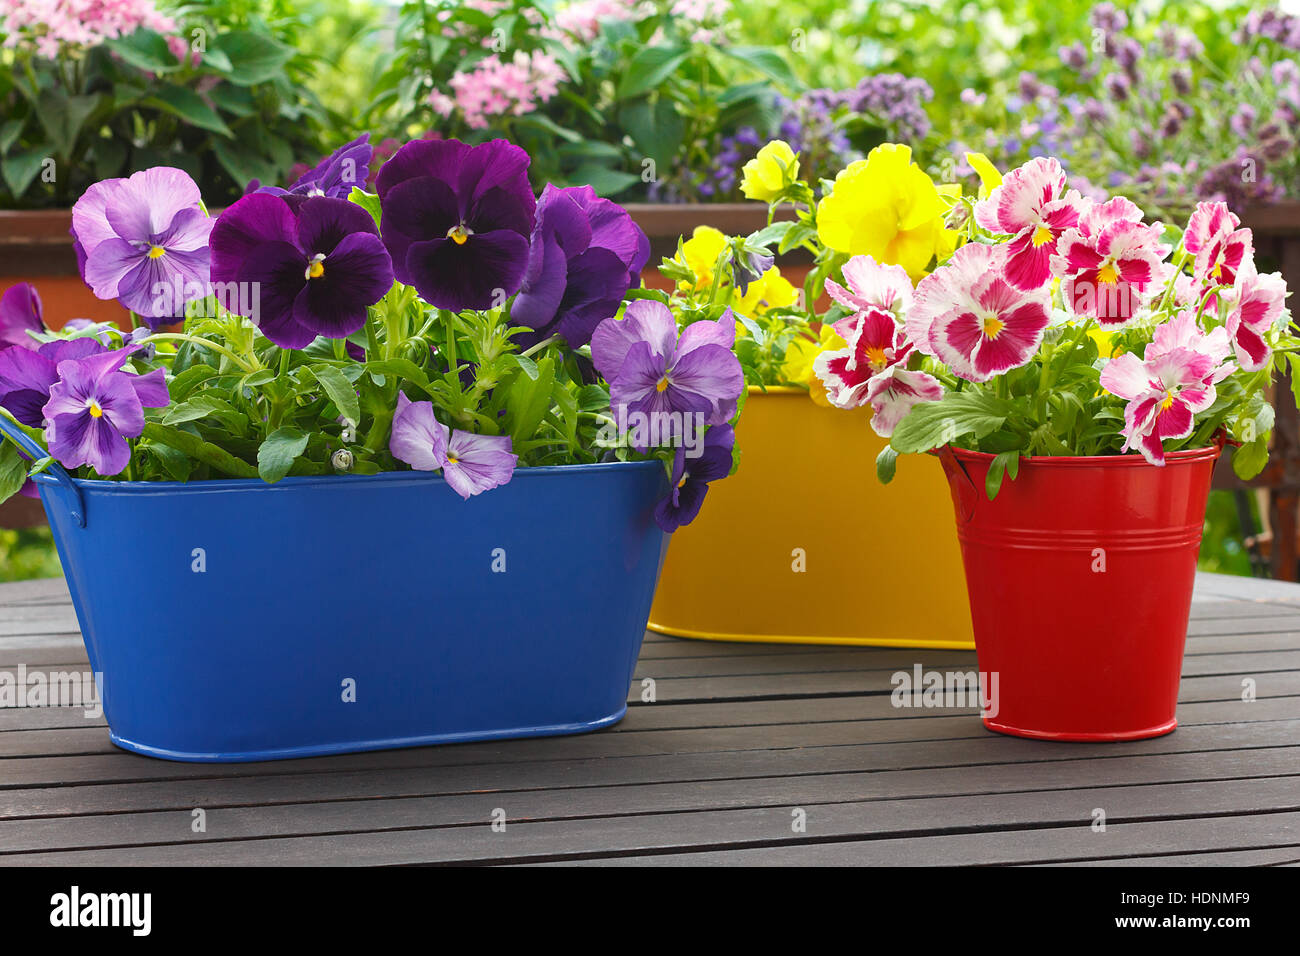 Violet, Bleu, rouge et jaune fleur dans 3 pots correspondant sur un balcon table, copyspace, fond vert Banque D'Images